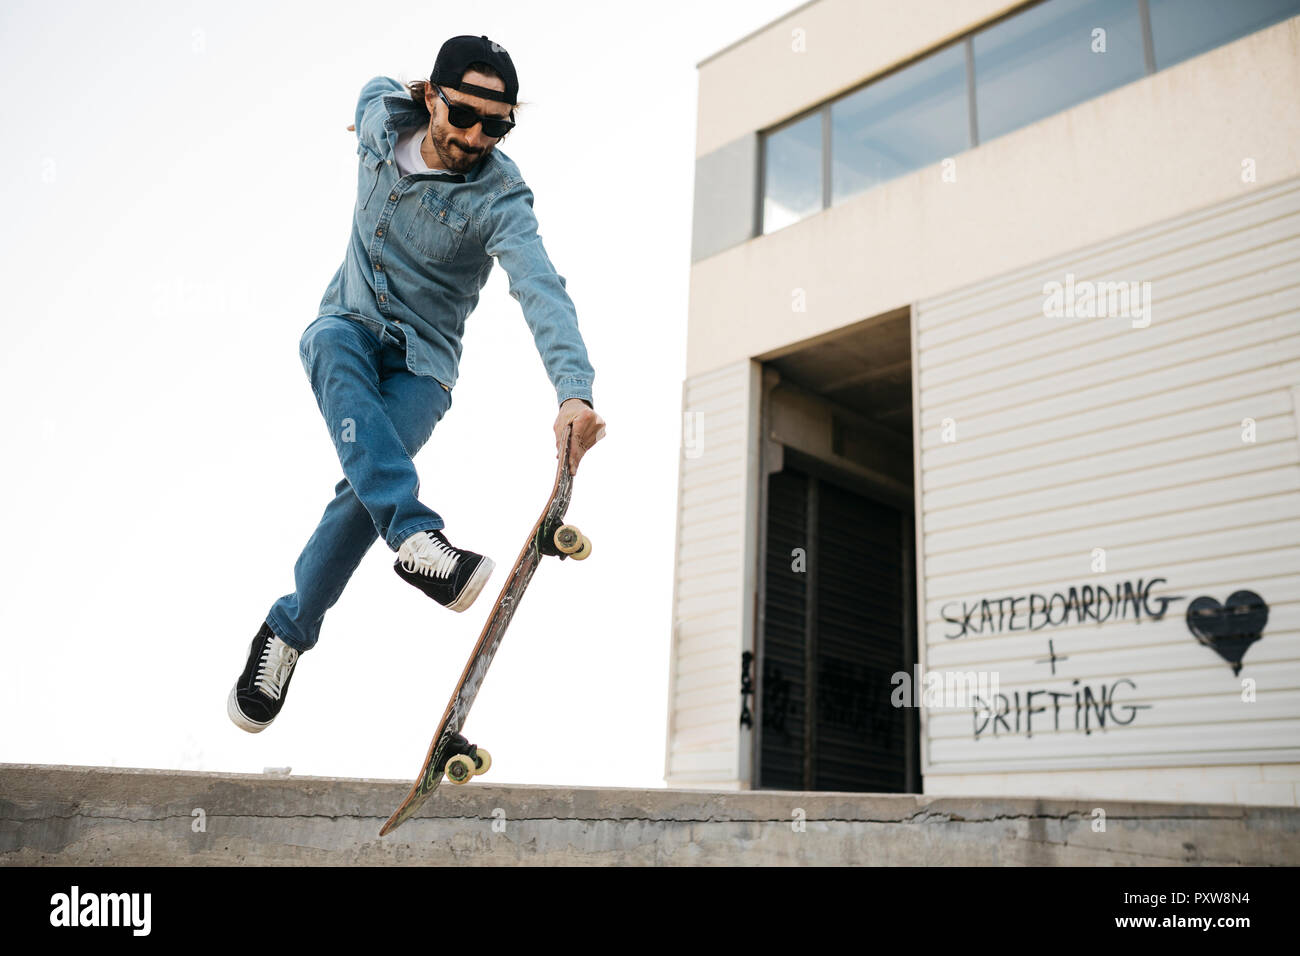 Alla moda uomo in denim e cappuccio skateboard, facendo saltare con lo skateboard dalla rampa di cemento Foto Stock